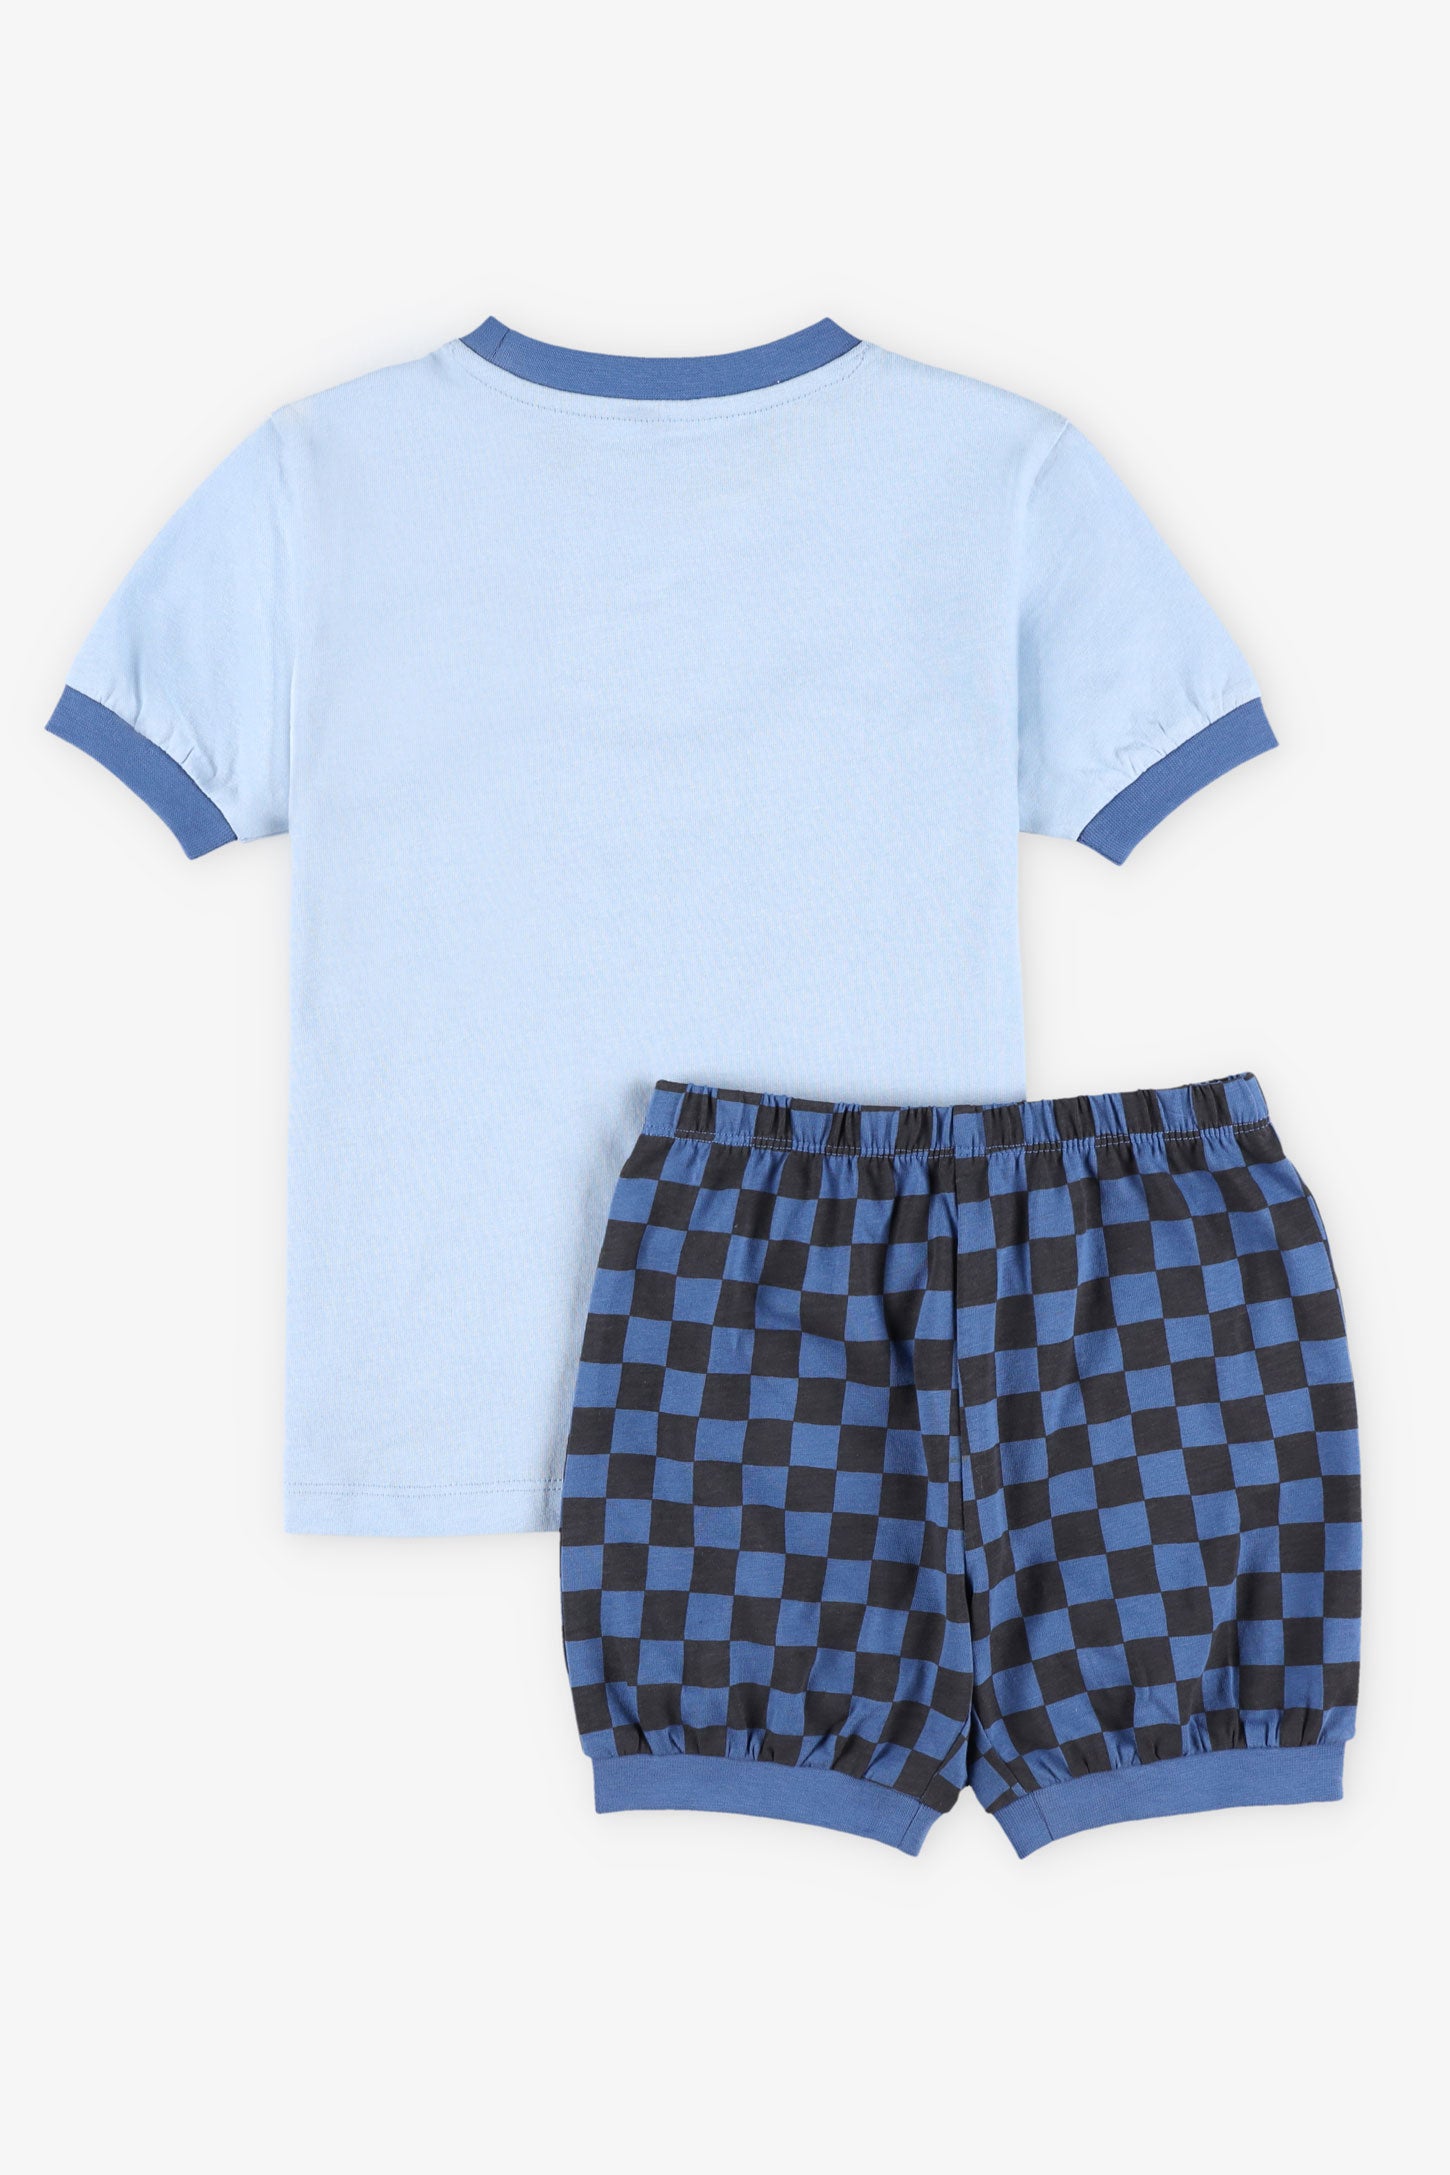 Pyjama 2-pièces, 2/35$ - Enfant garçon && BLEU PALE